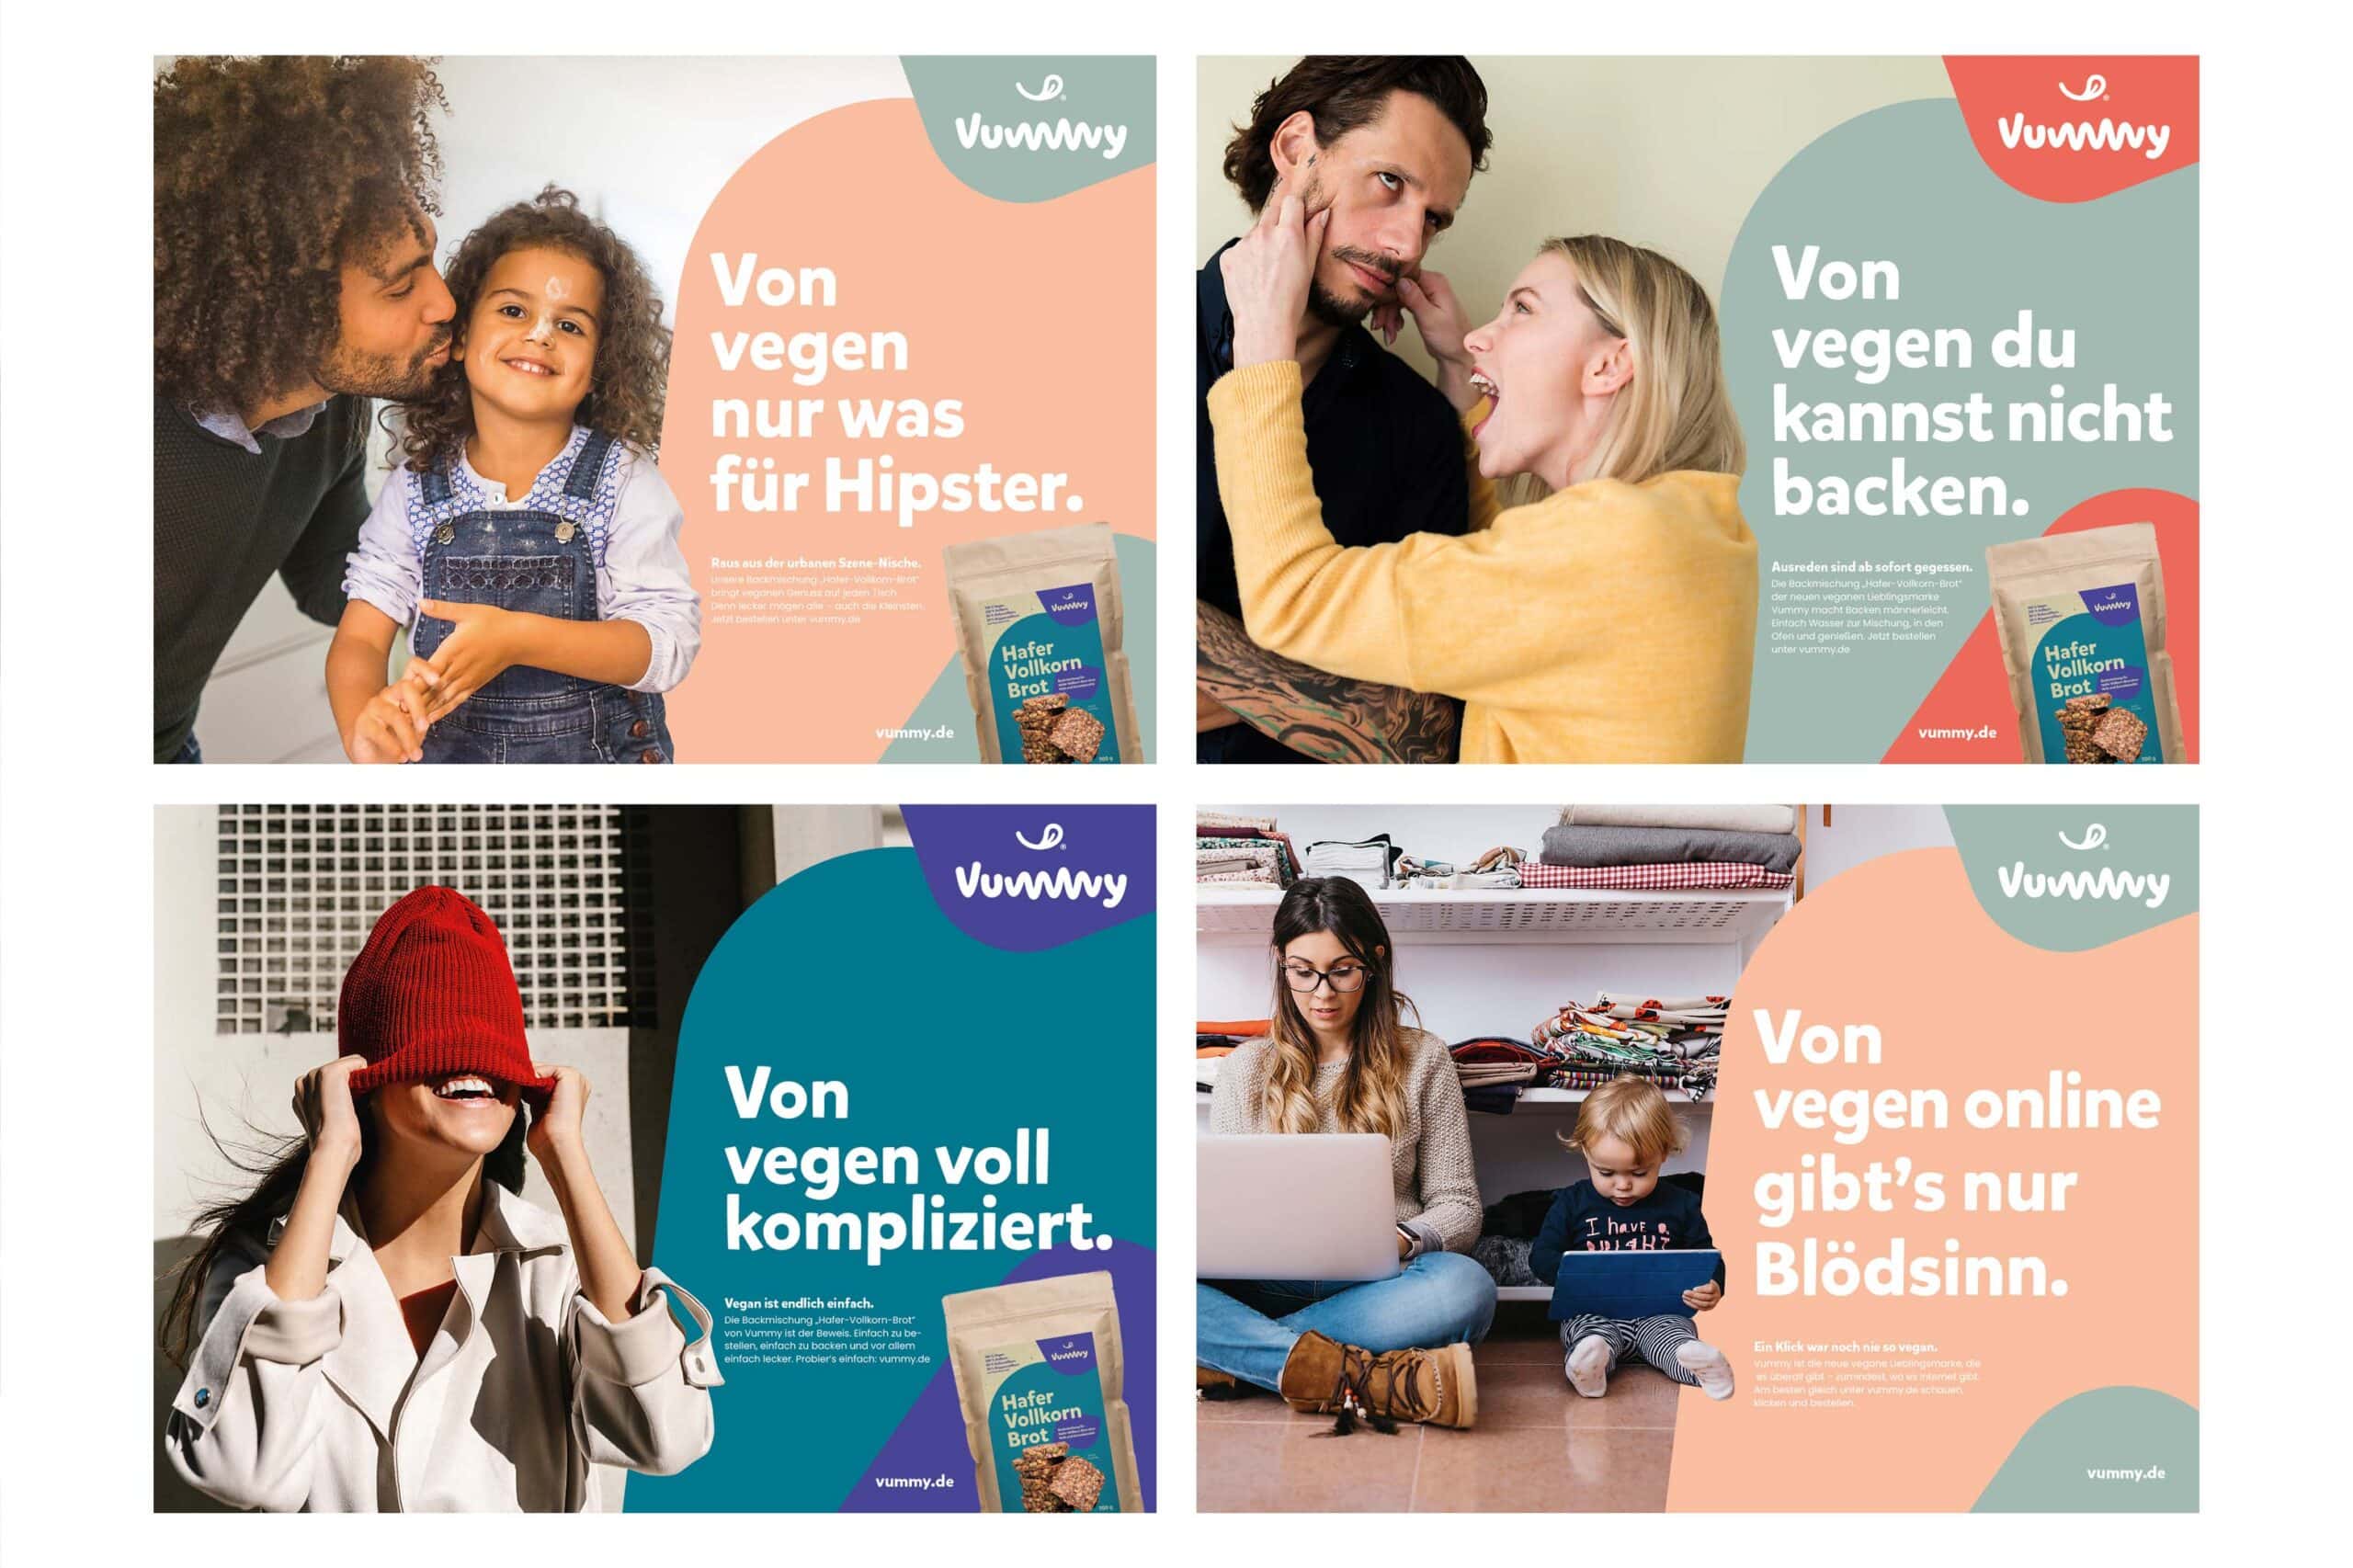 Vier Werbeplakate, die für Vummy erstellt wurden, auf denen verschiedene Slogans zusammen mit ihren entsprechenden Bildern die Marke repräsentieren